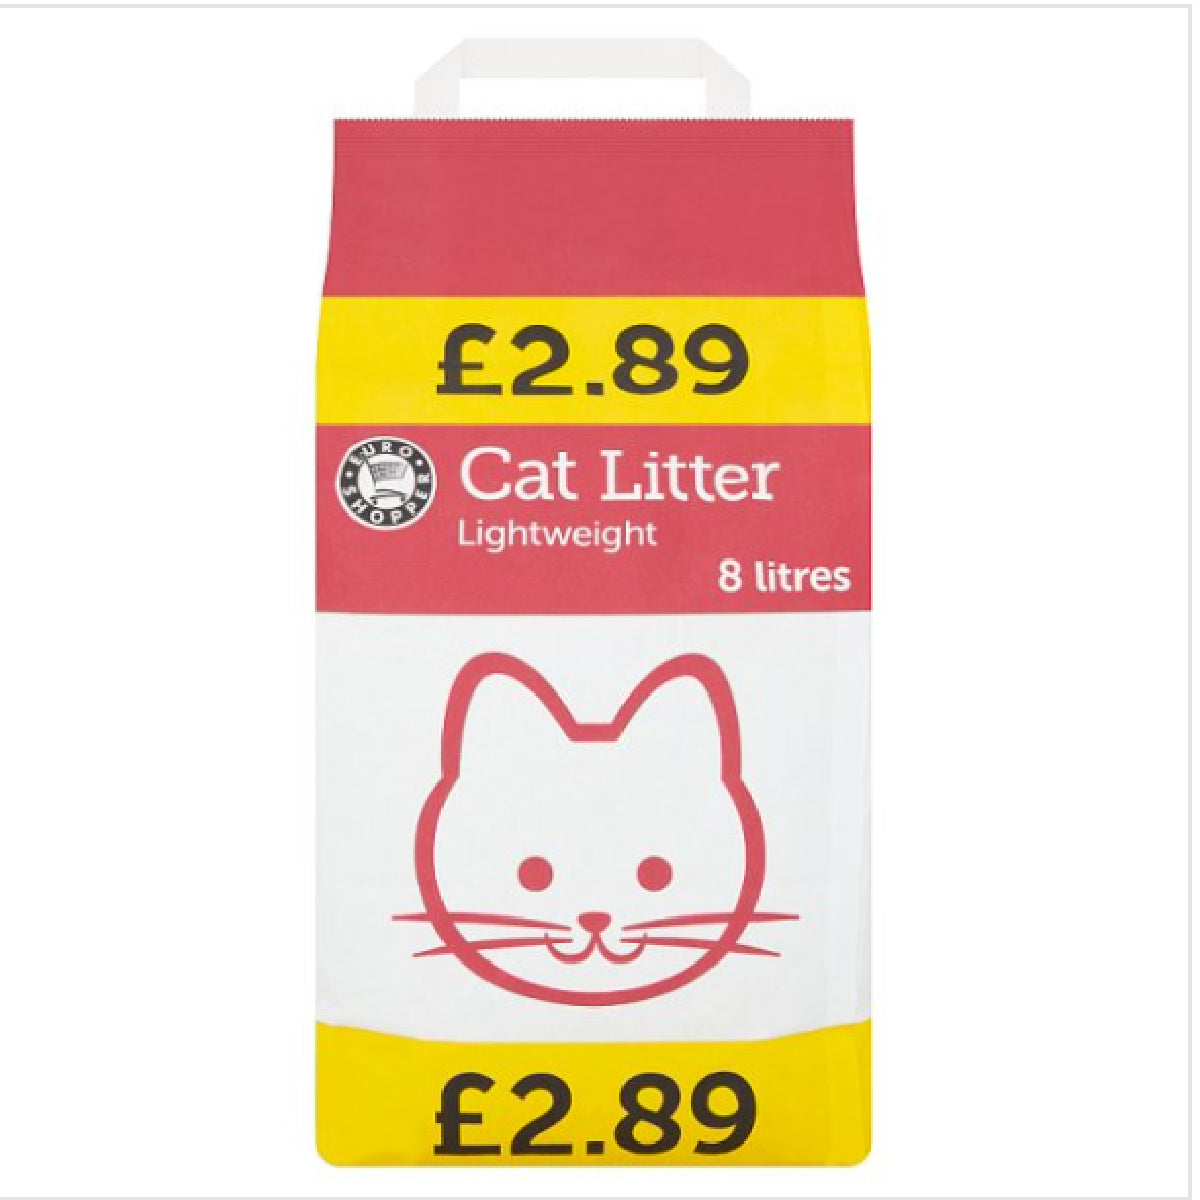 Euro Shopper - Lightweight Cat Litter - 8L - Continental Food Store